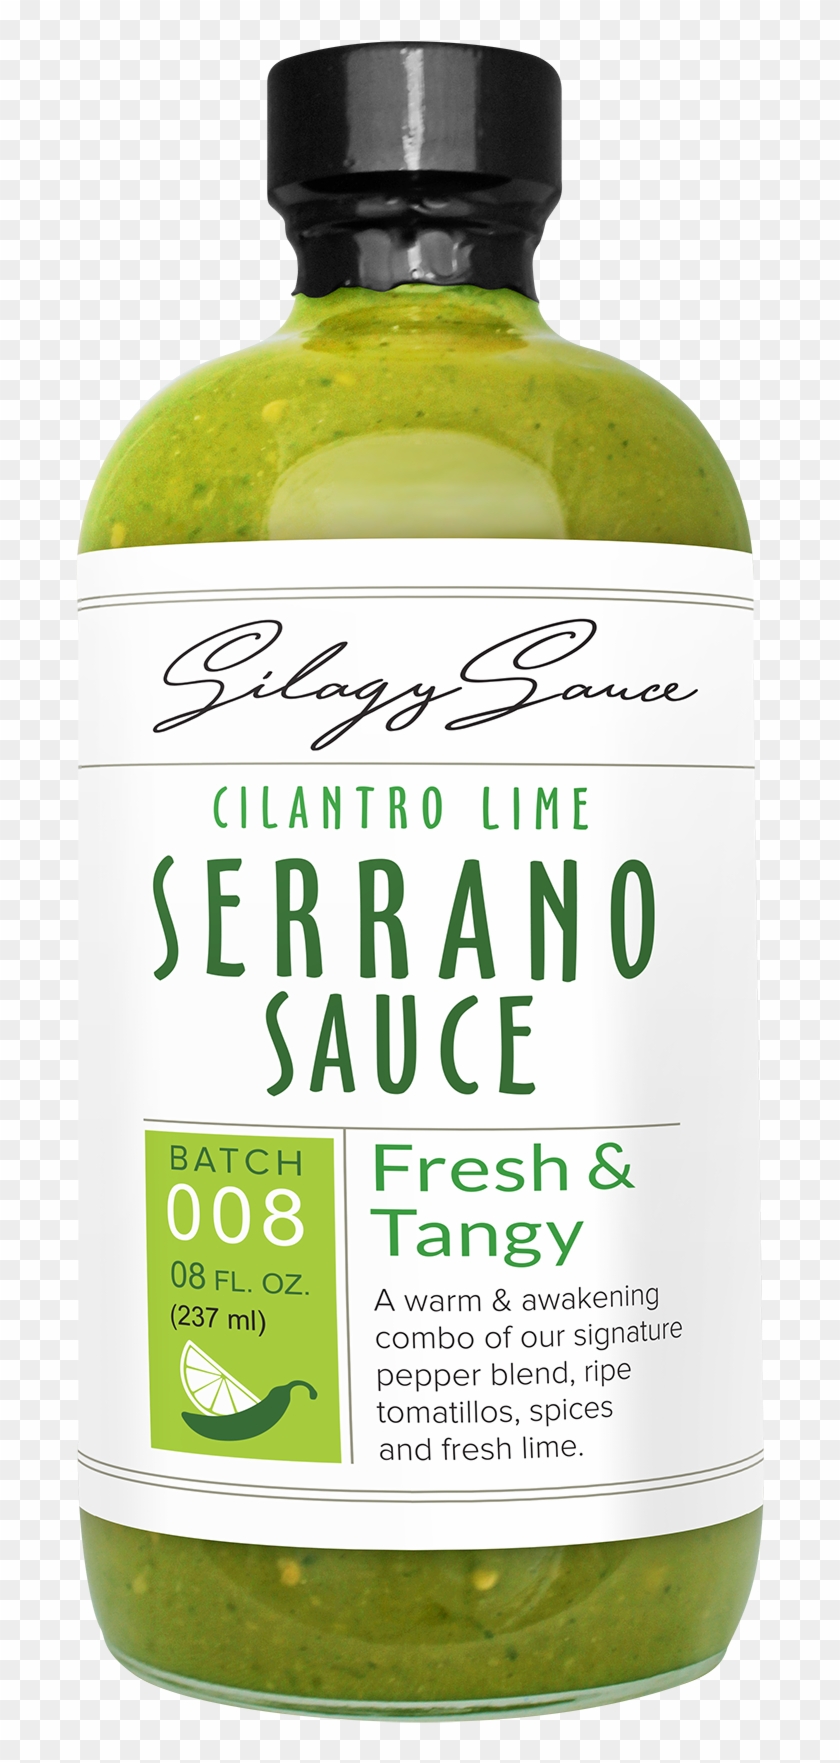 Cilantro Lime Serrano Sauce - Glass Bottle Clipart #644884